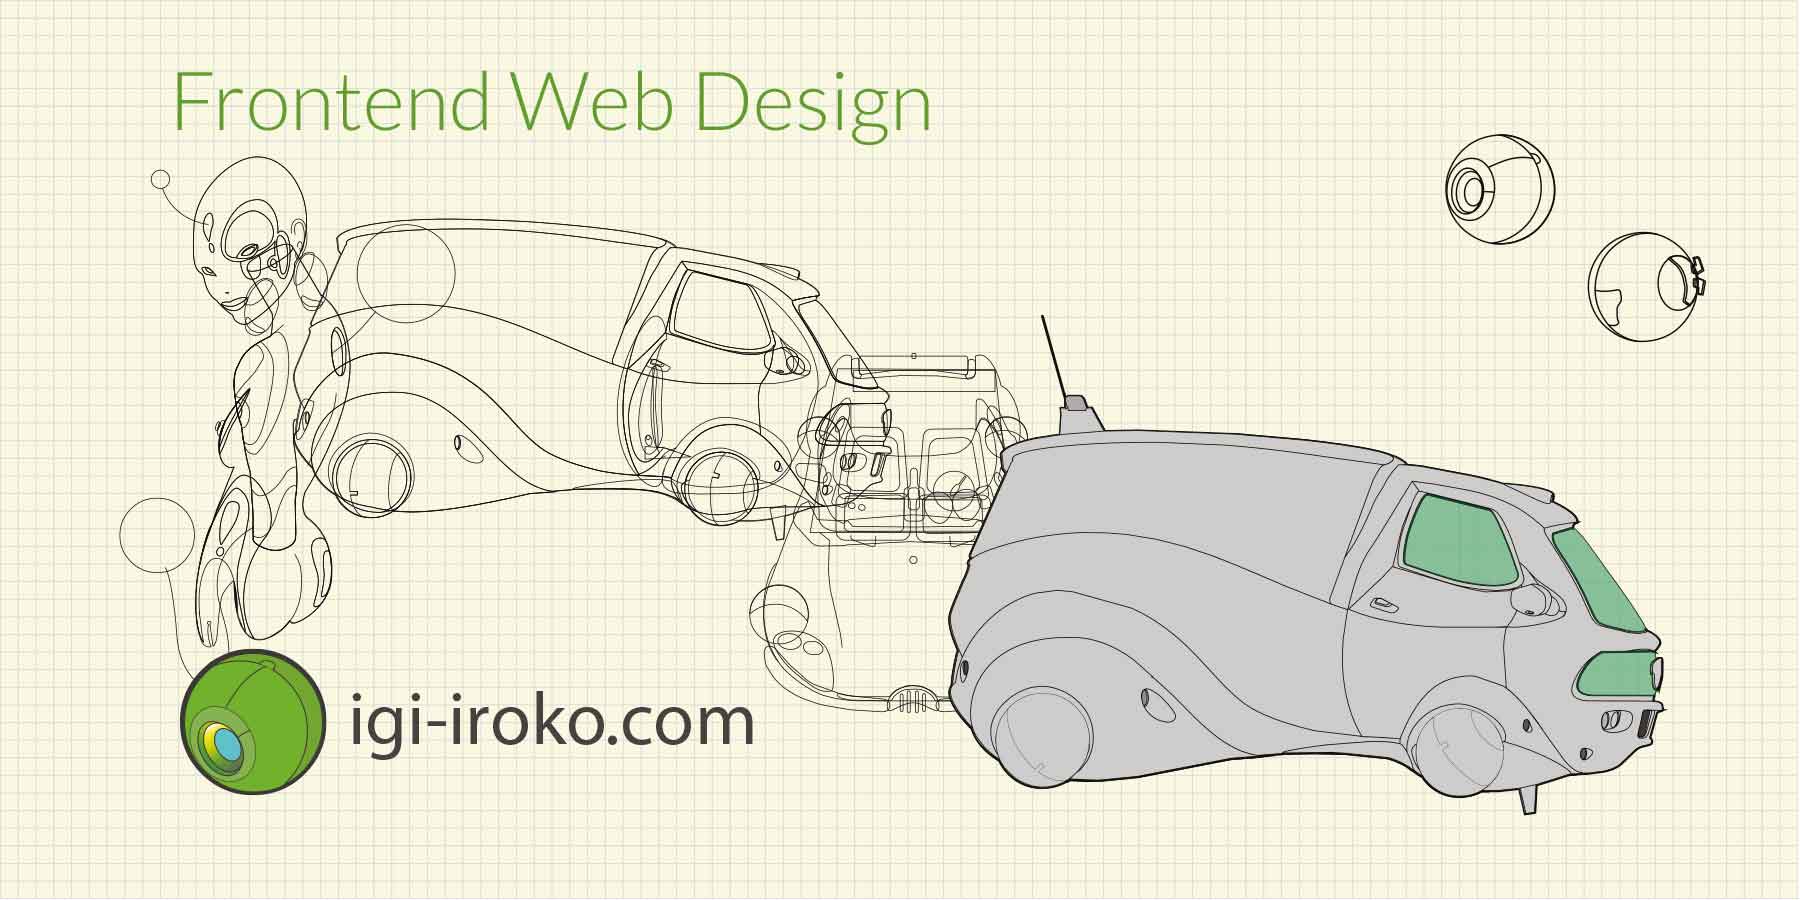 igi-iroko.com | Frontend Web Design.